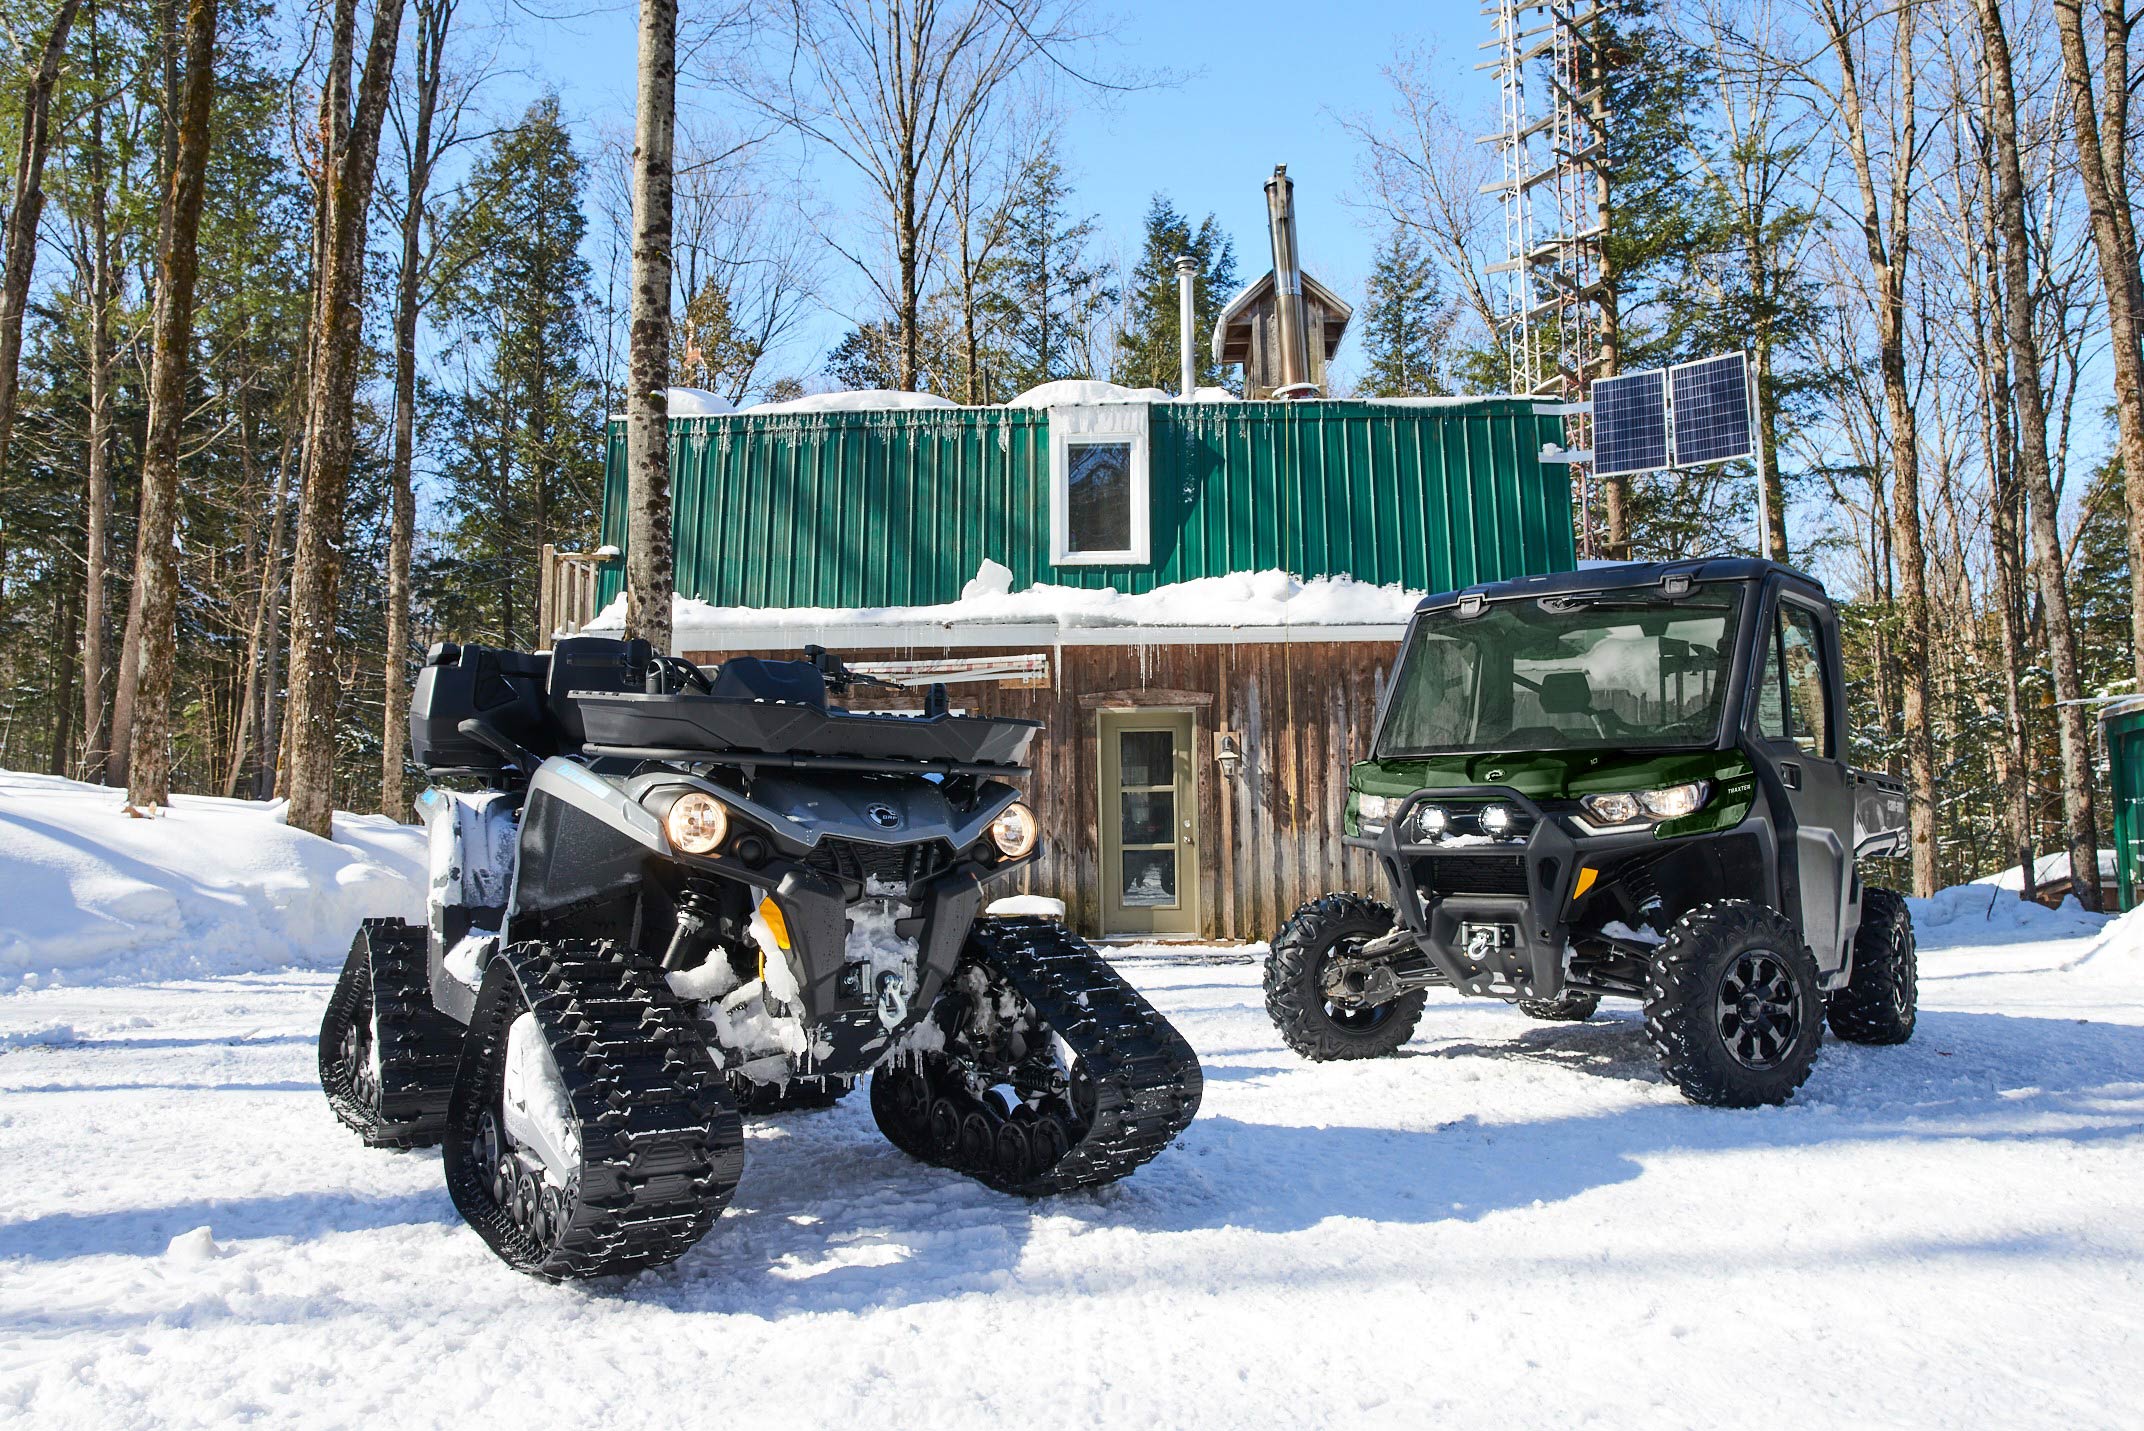  Can-Am Outlander und Traxter im Winter neben einer Hütte